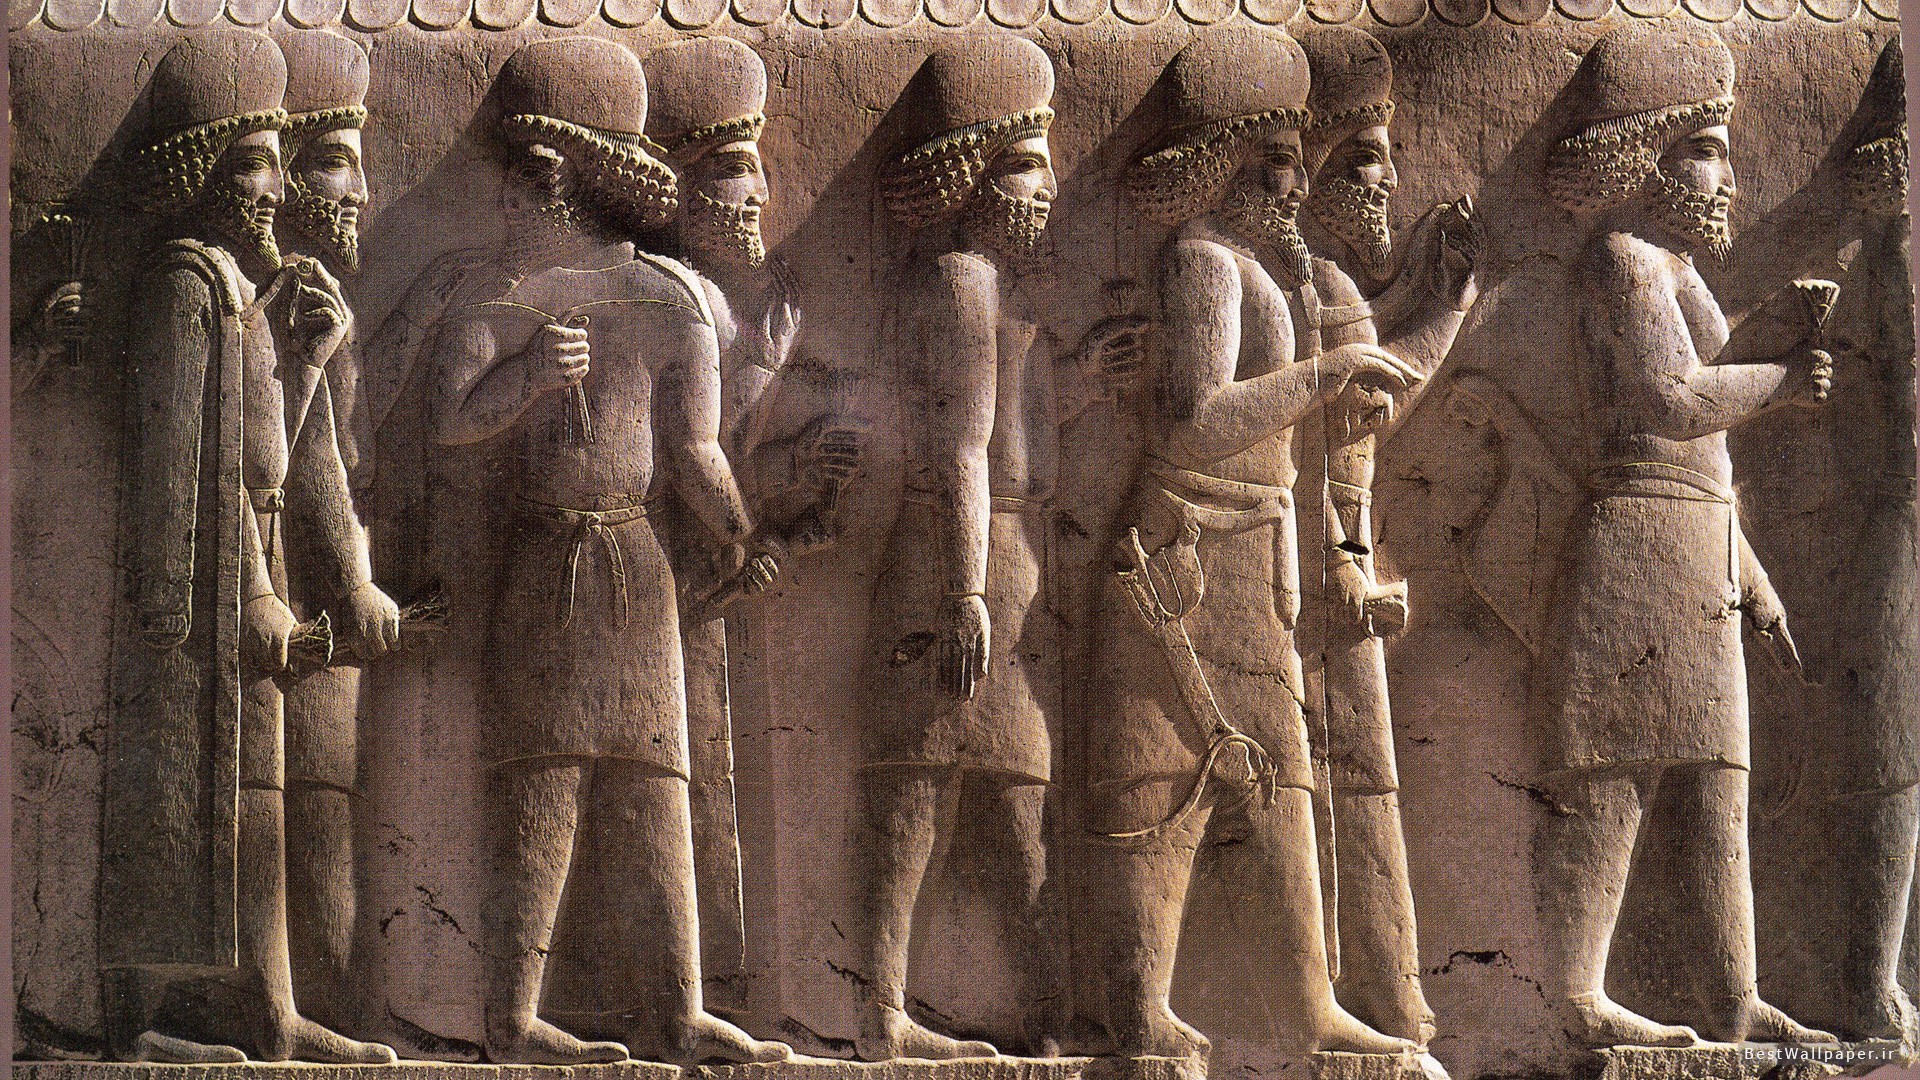 Sumerian Wallpaper